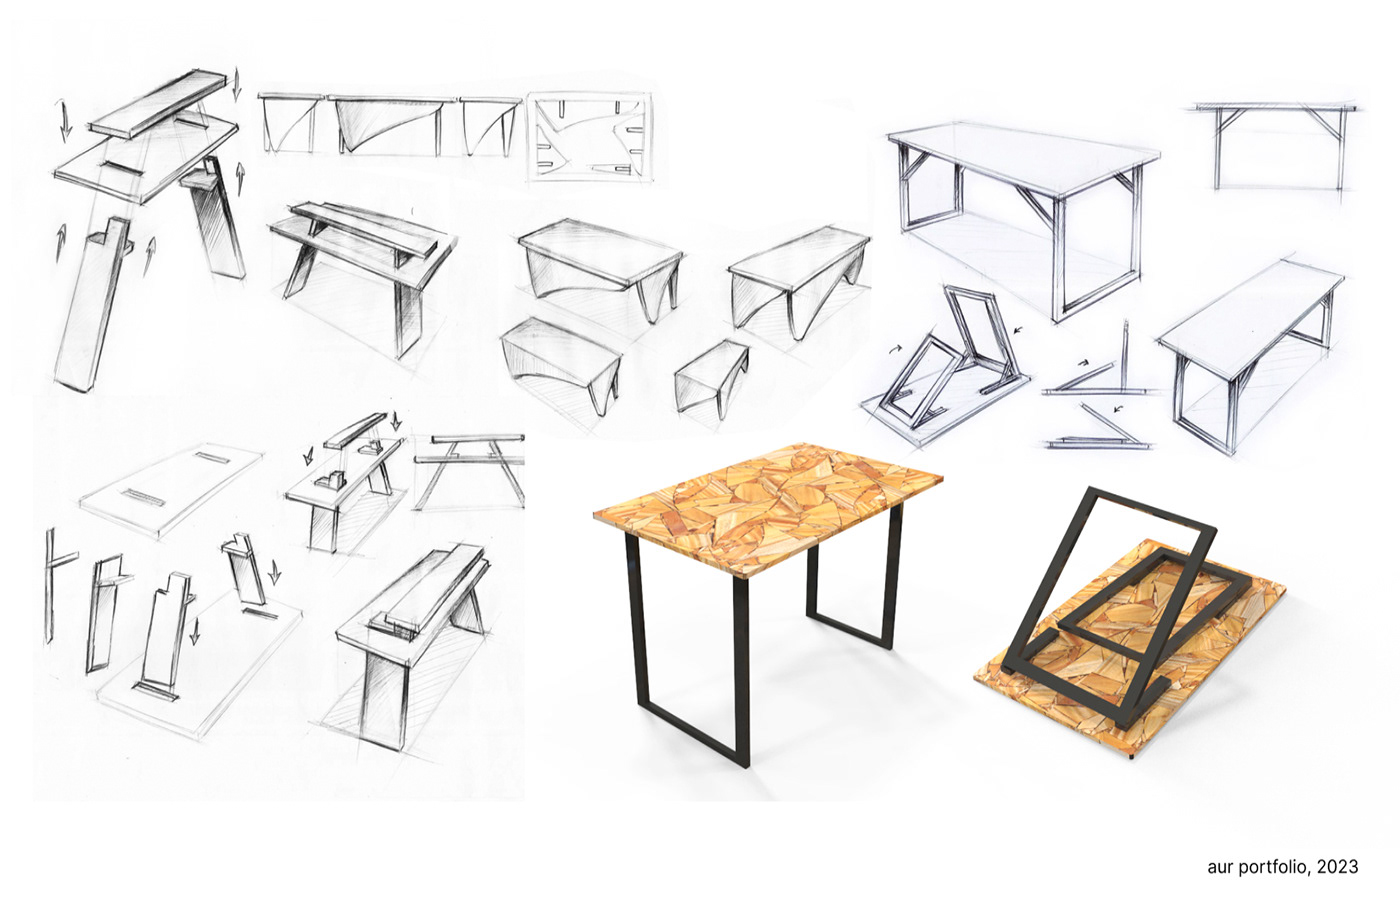 furniture product design  Custom furniture woodworking furniture design  industrial product design